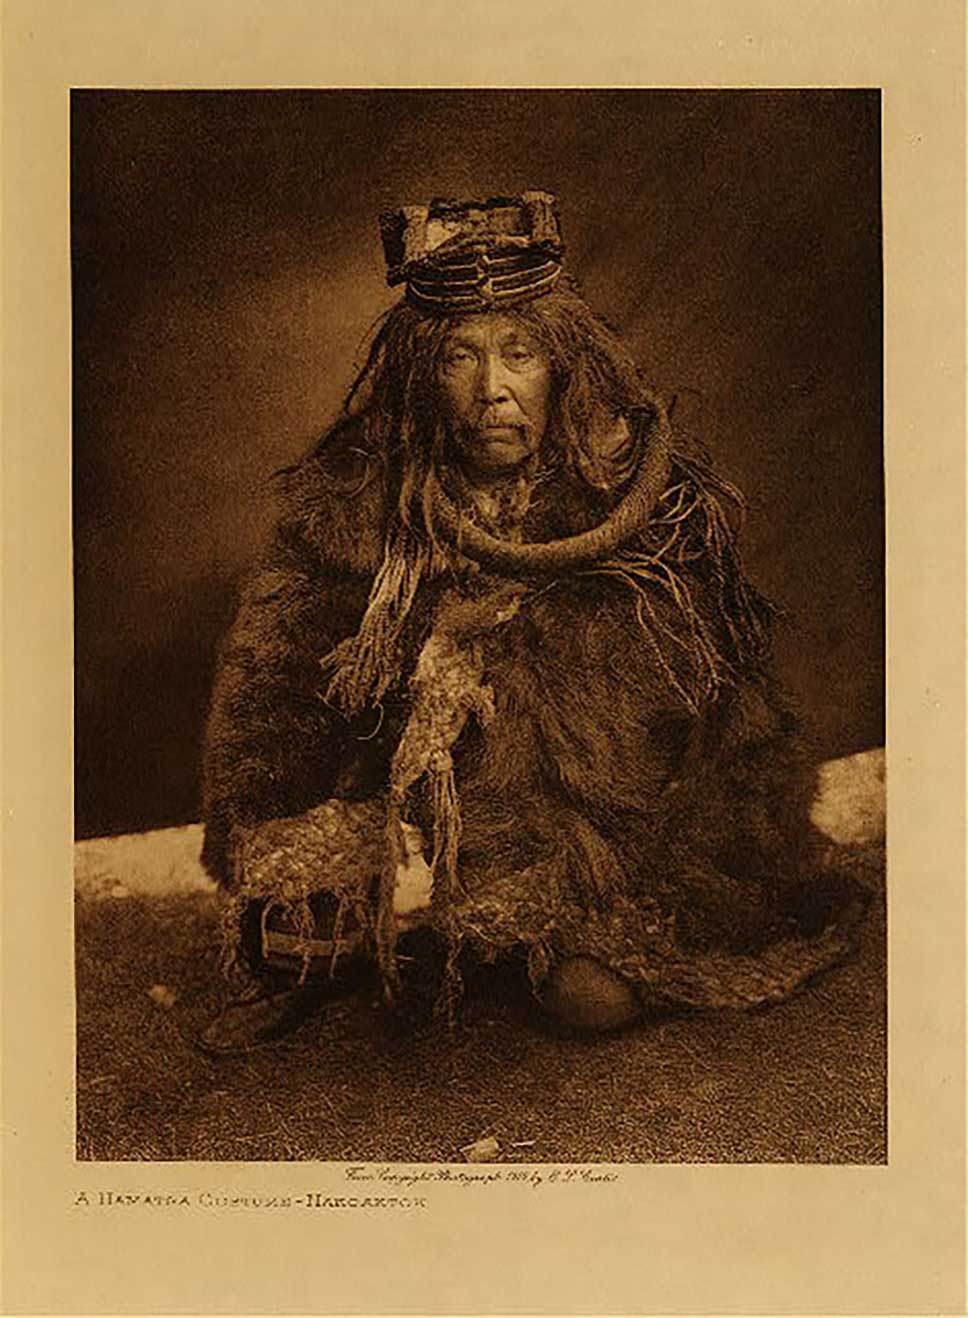 Photographie sépia par Edward Curtis un danseur Hamatsa apprivoisé, en tenue d'écorce de cèdre, accroupi, l'air sérieux, en 1910